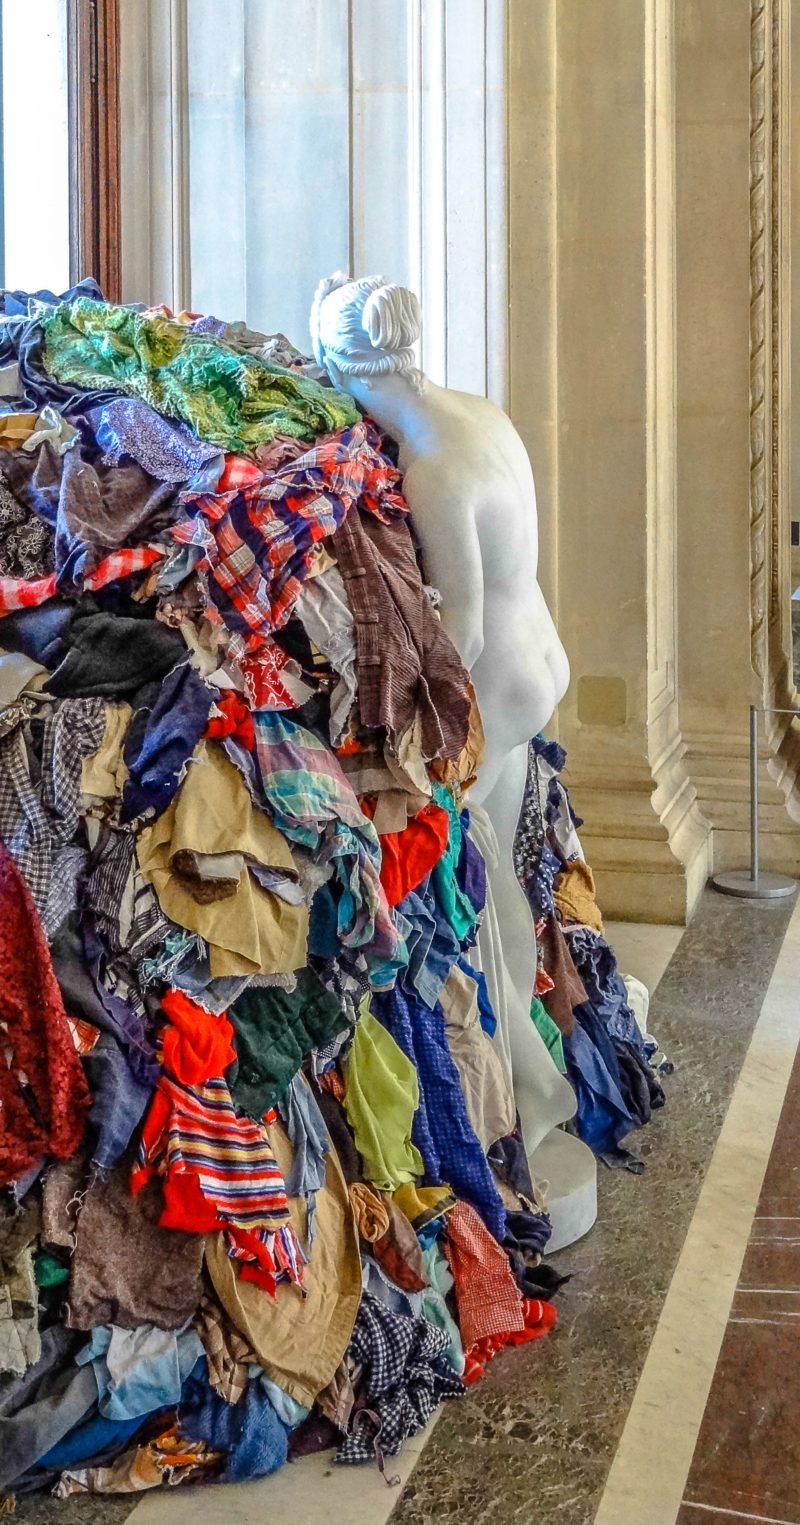 Michelangelo Pistoletto - Venere degli Stracci (Venus of the rags), 1967, installation view, Louvre Museum, Paris, 2013